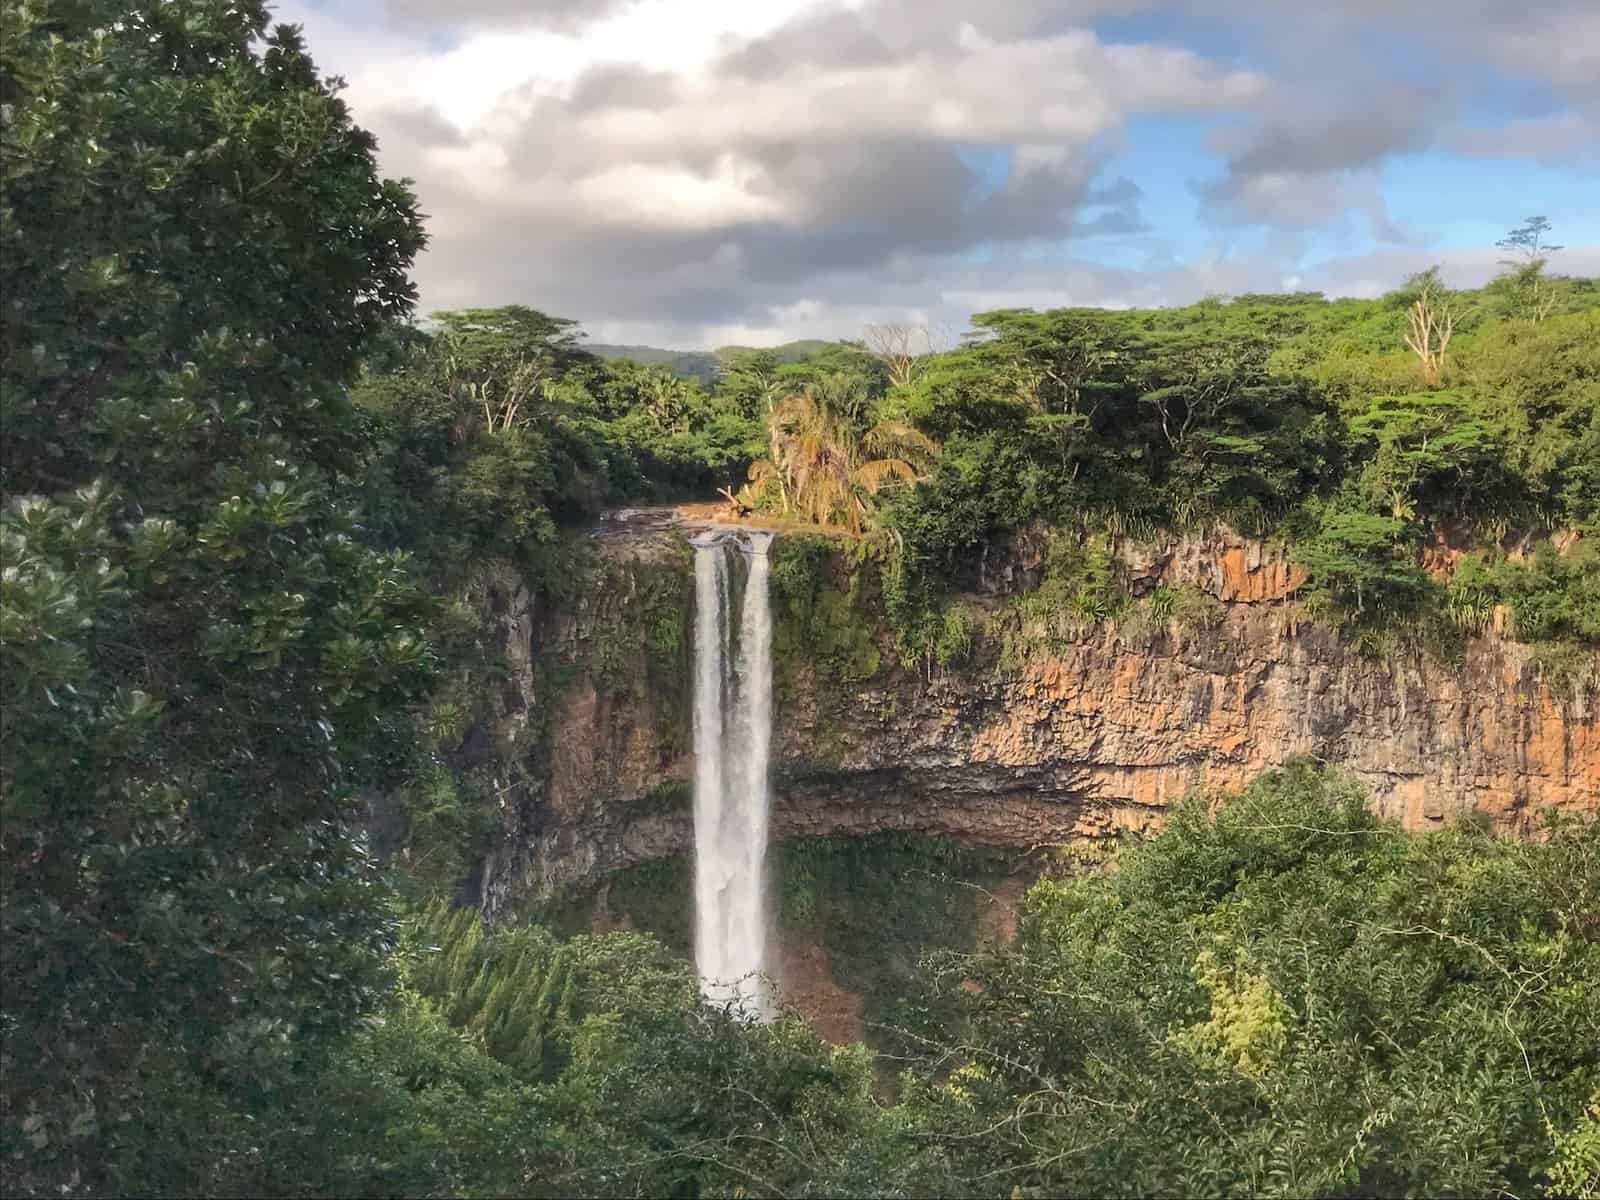 Waterfall in Mauritius